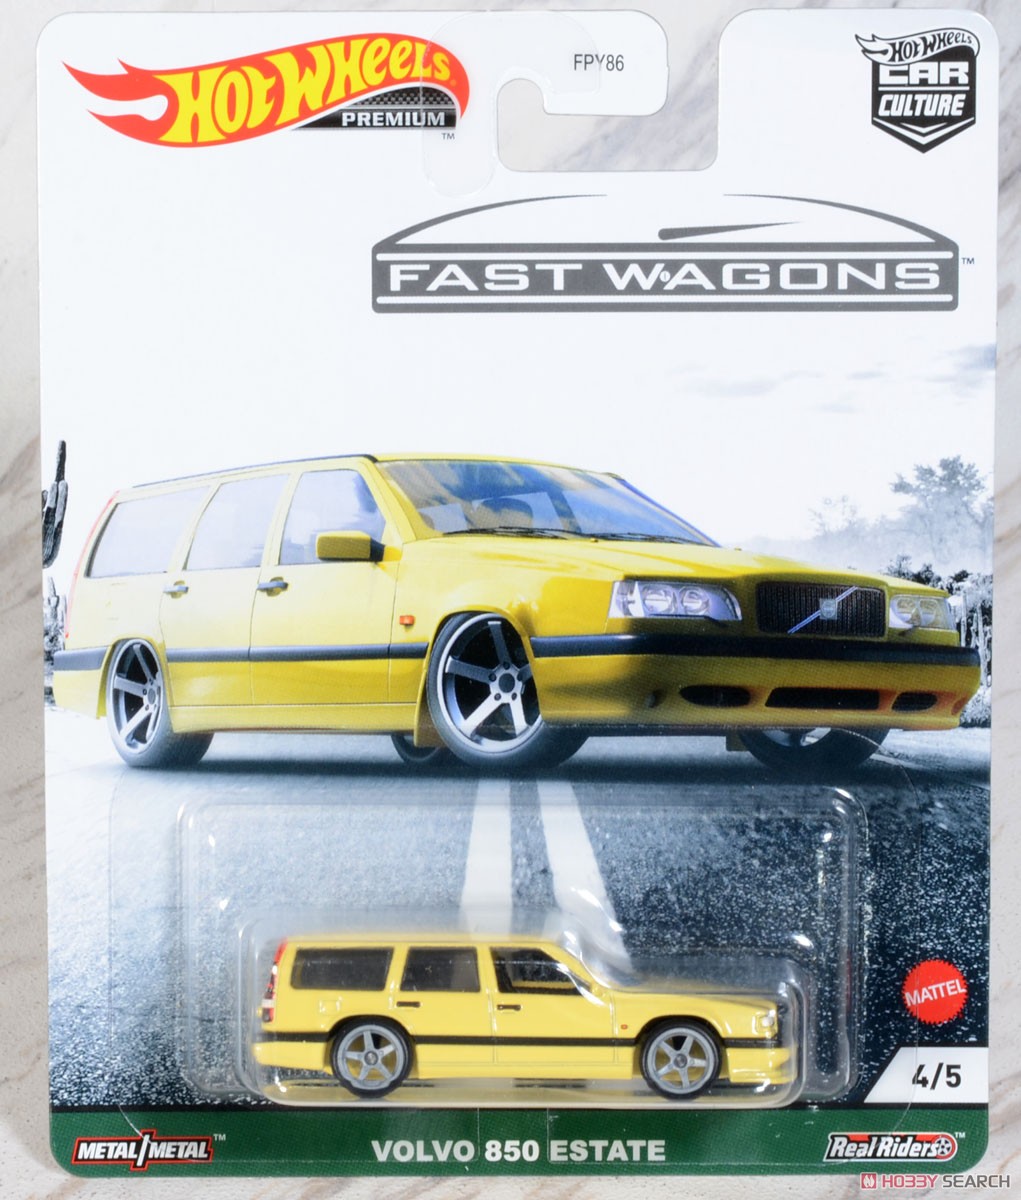 ホットウィール カーカルチャー ファスト ワゴン - ボルボ 850 エステート (玩具) パッケージ1